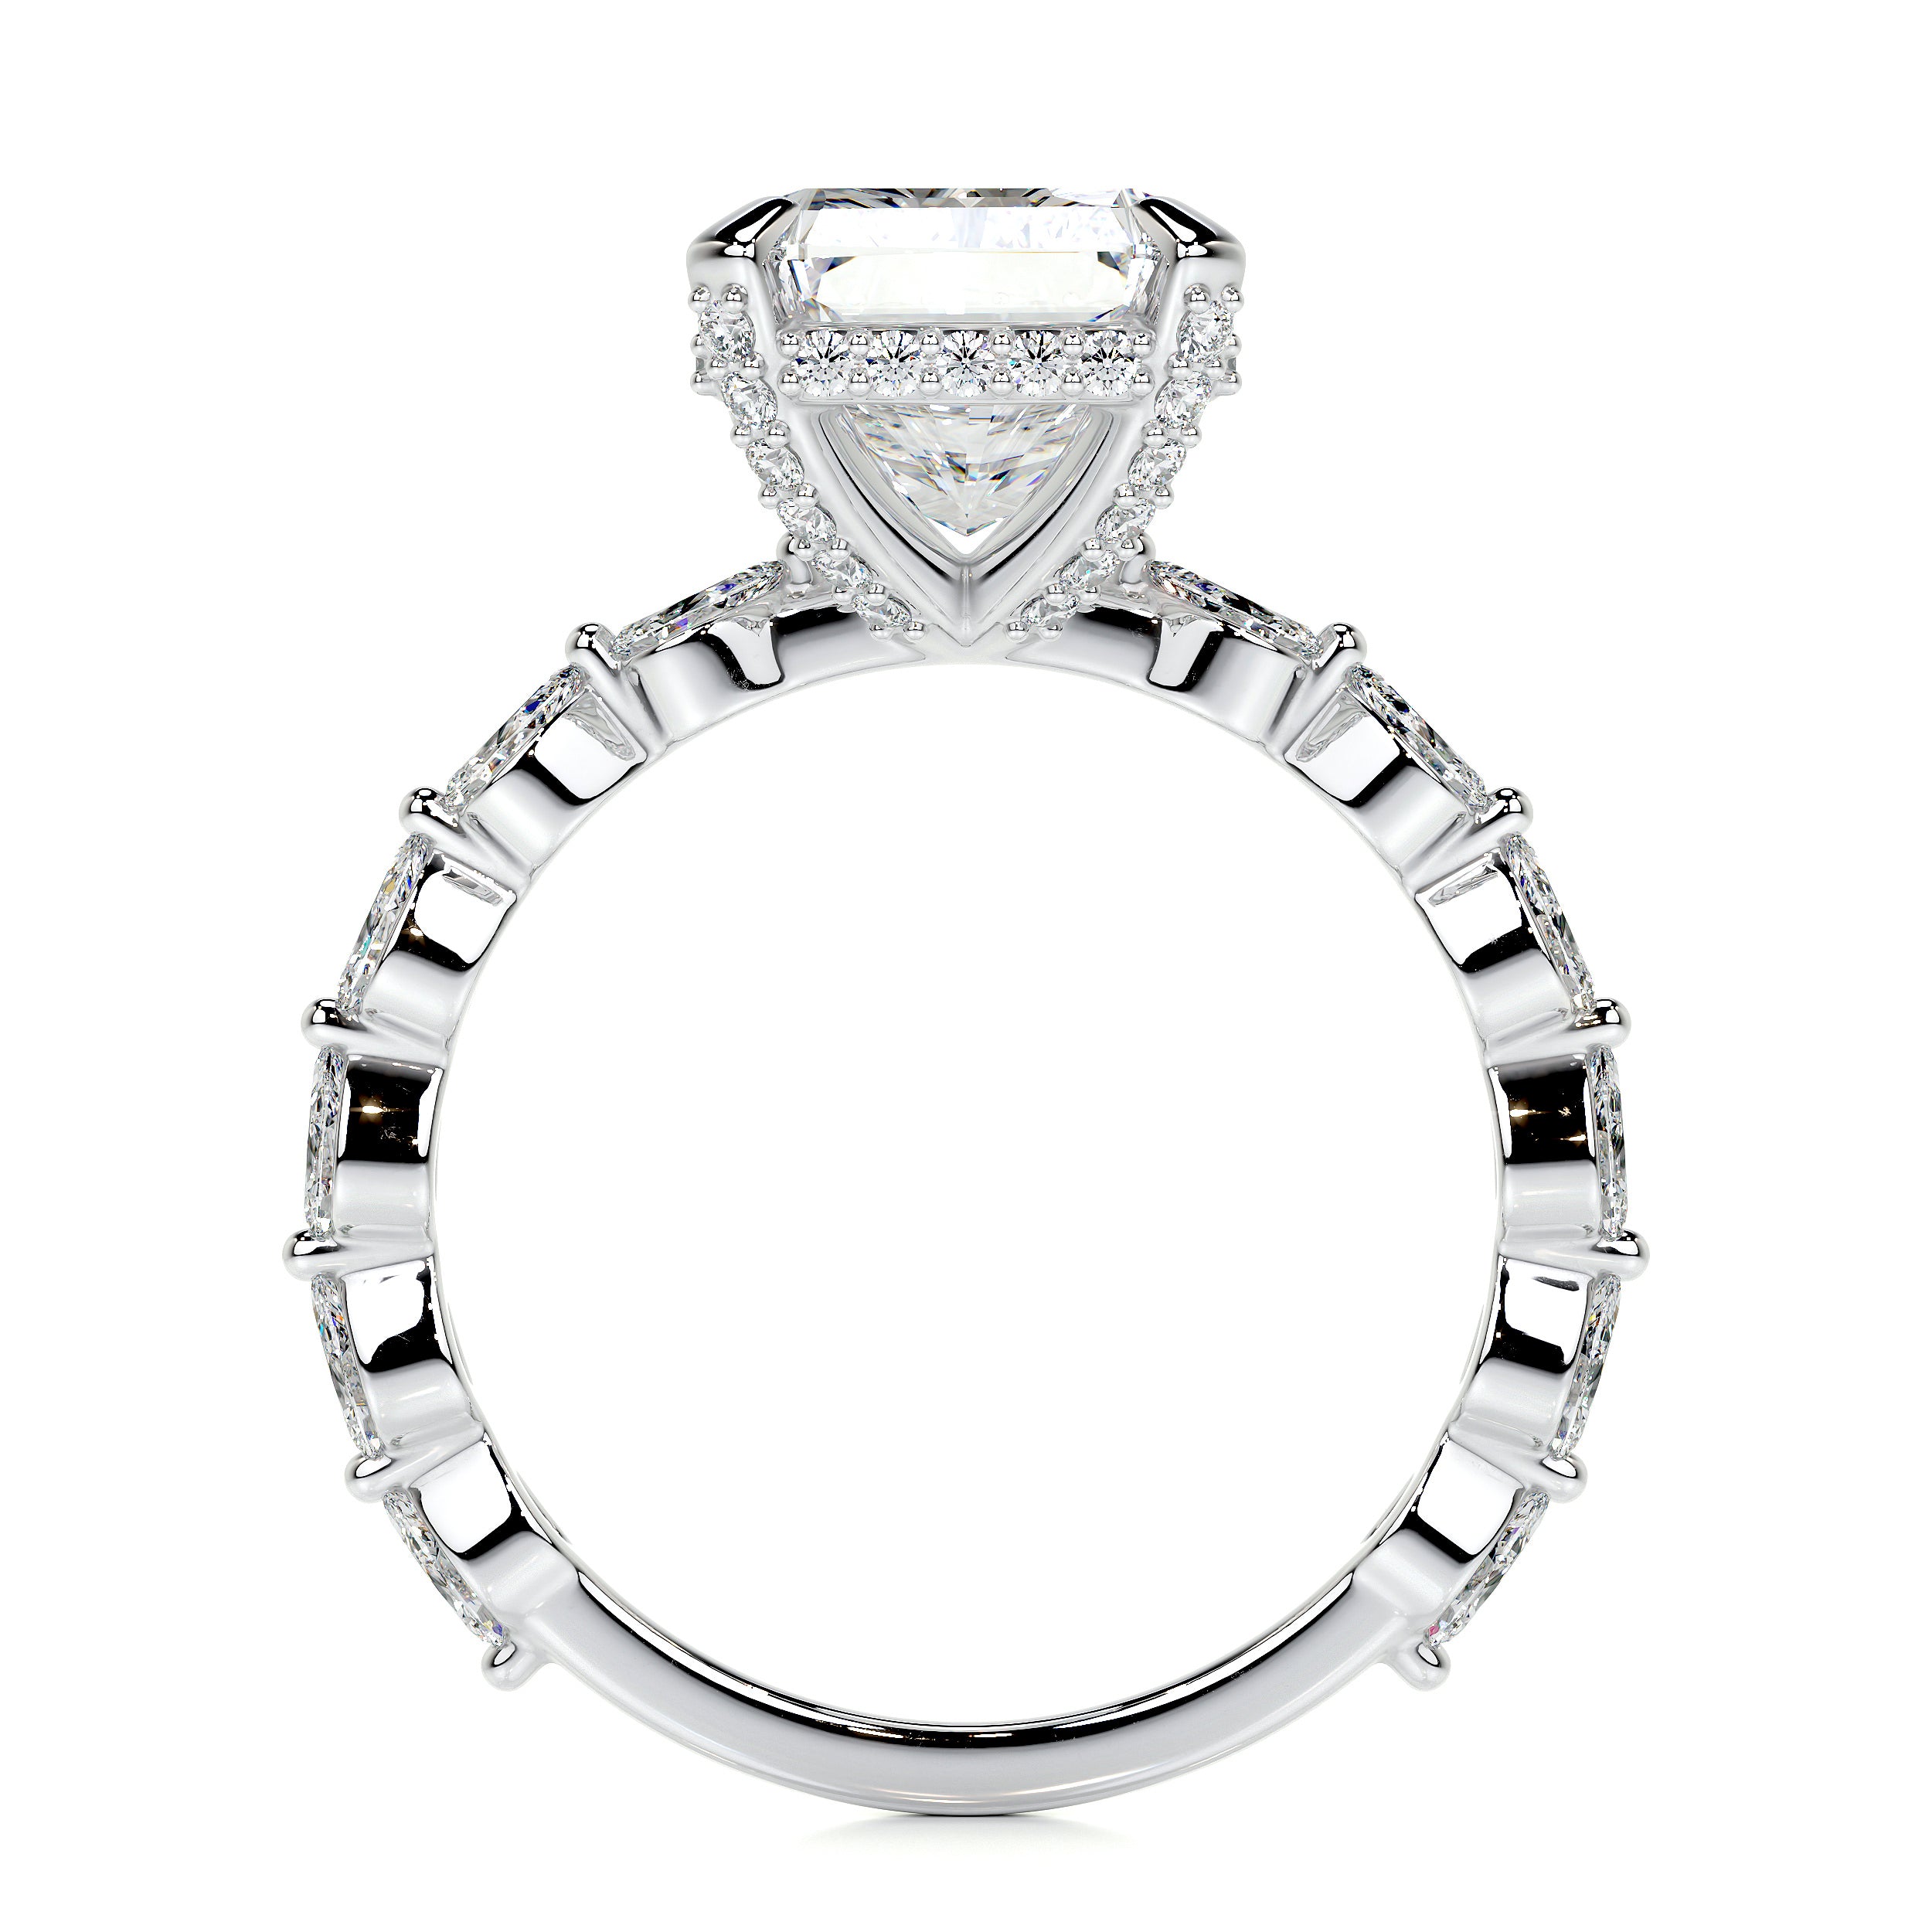 Robin Lab Grown Diamond Ring -18K White Gold